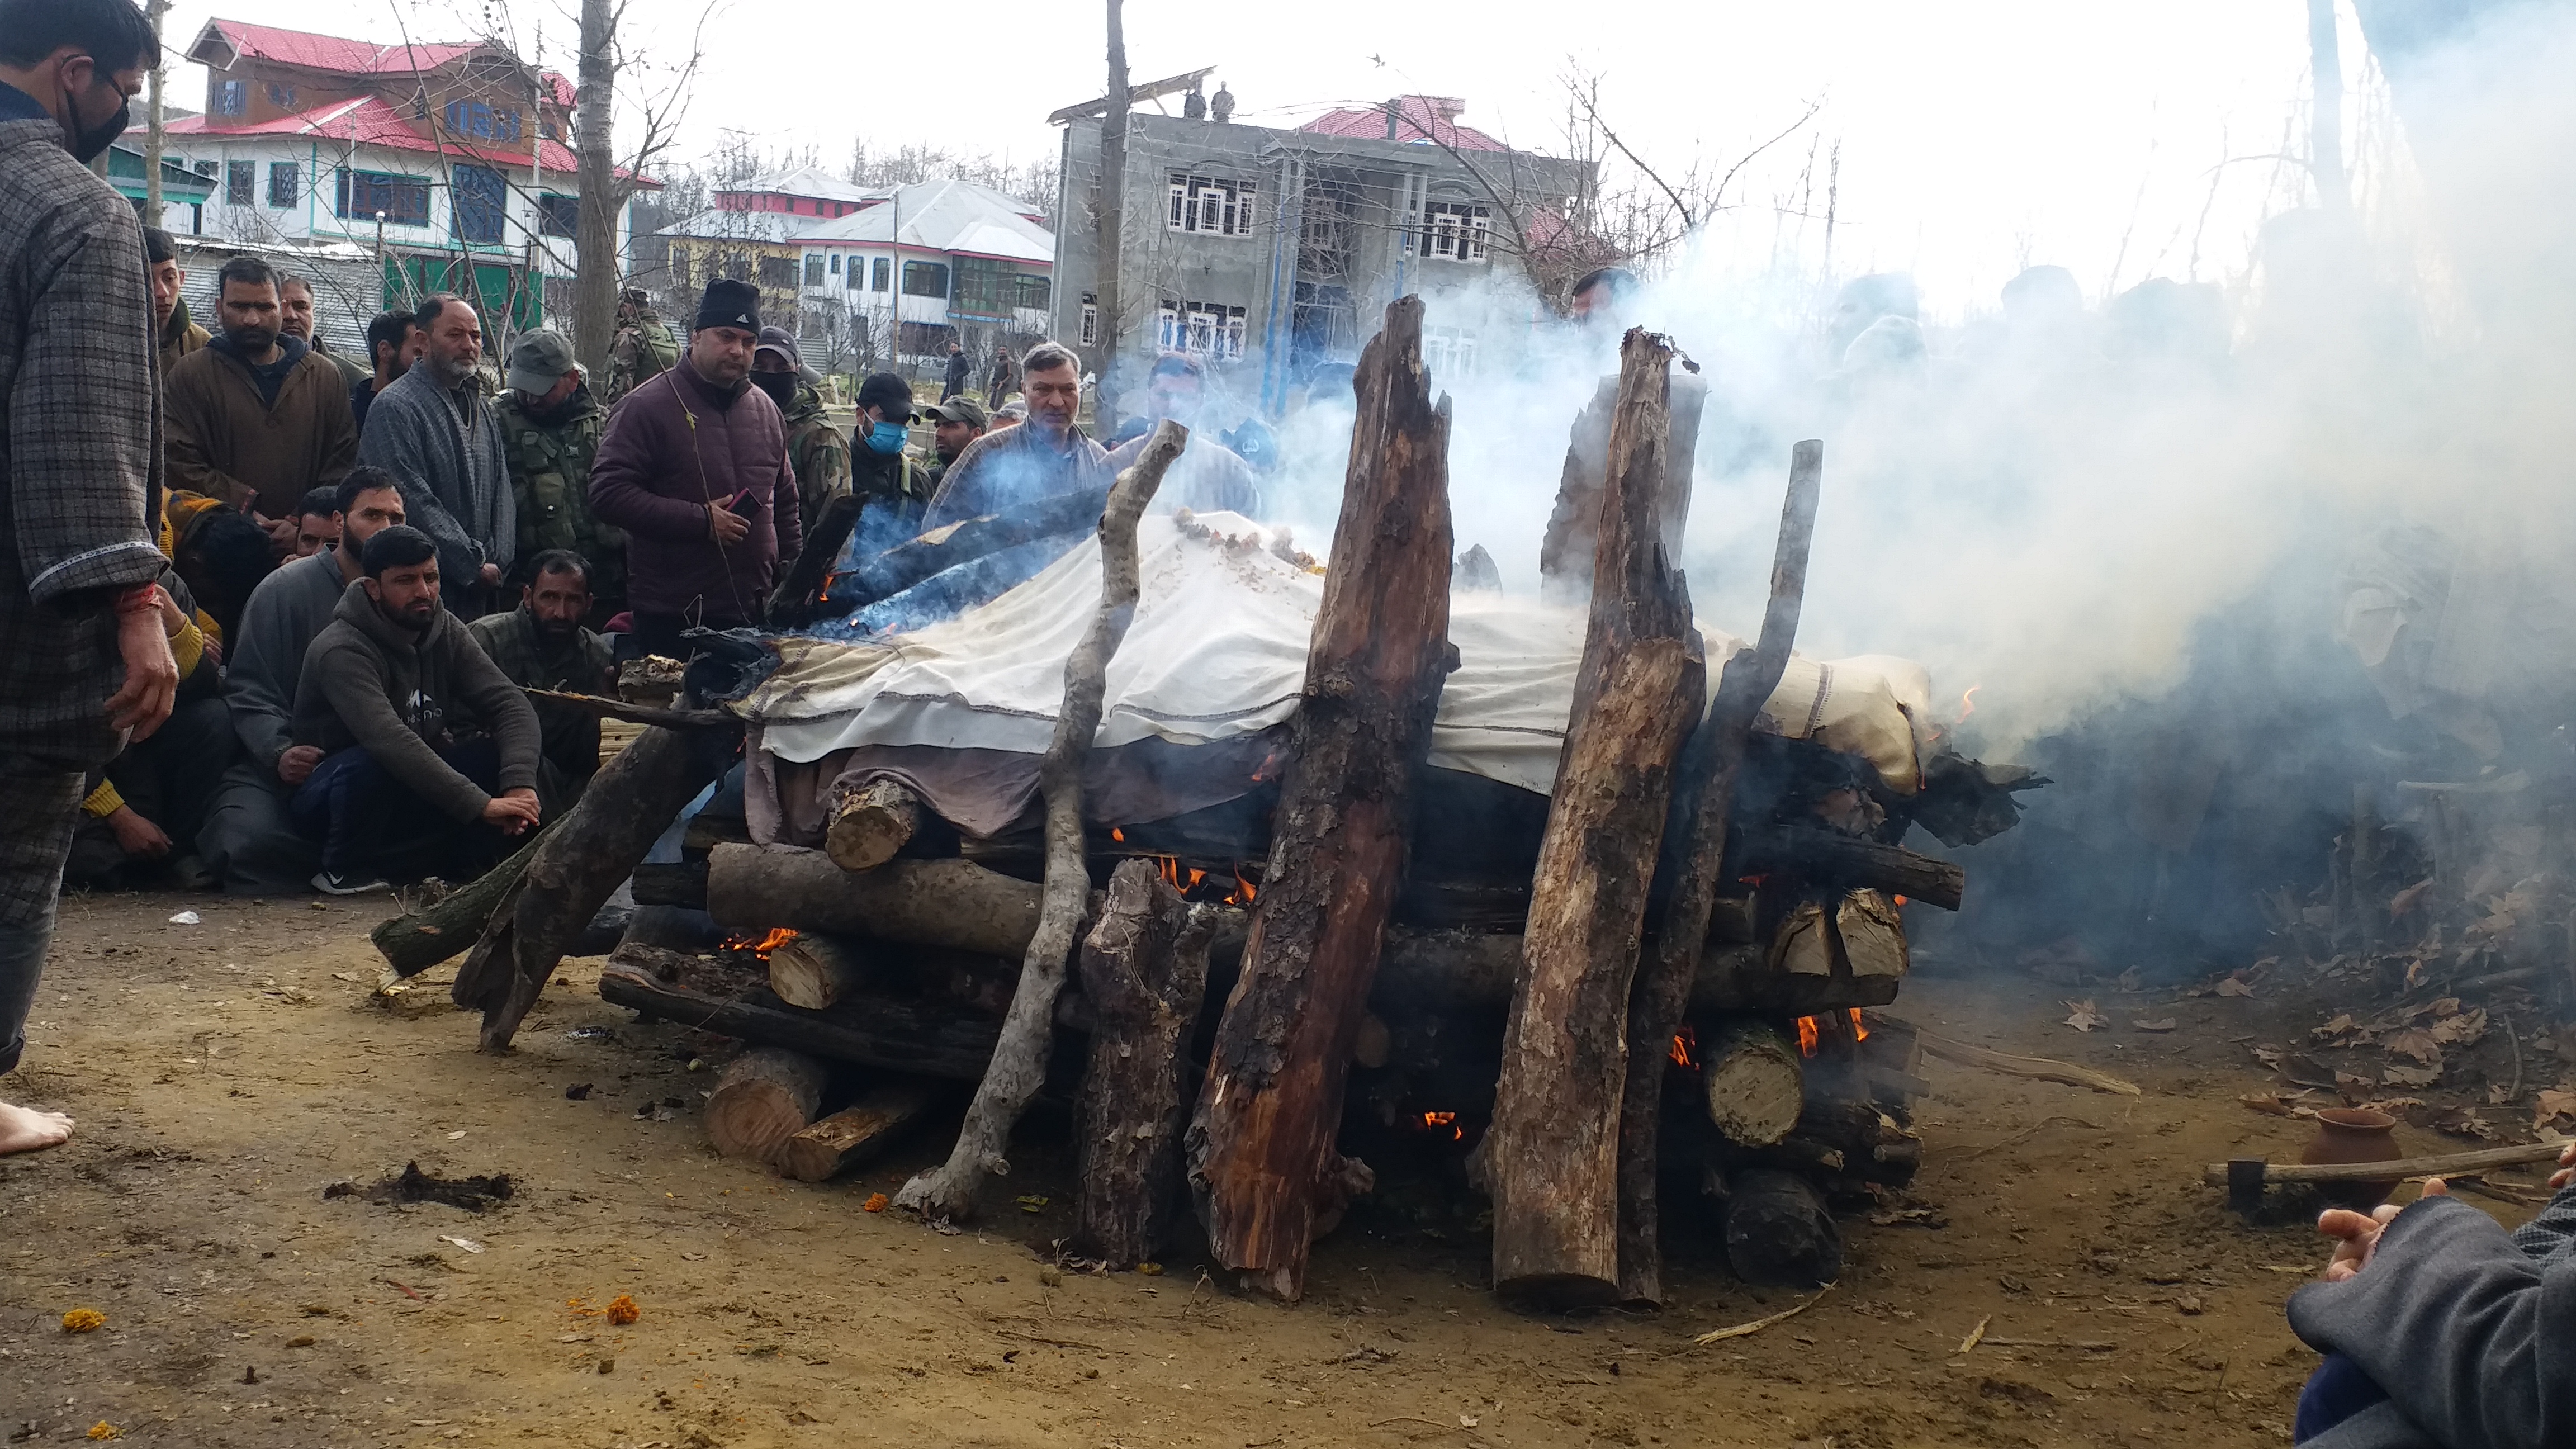 last rites of the deceased Kashmiri Pandit